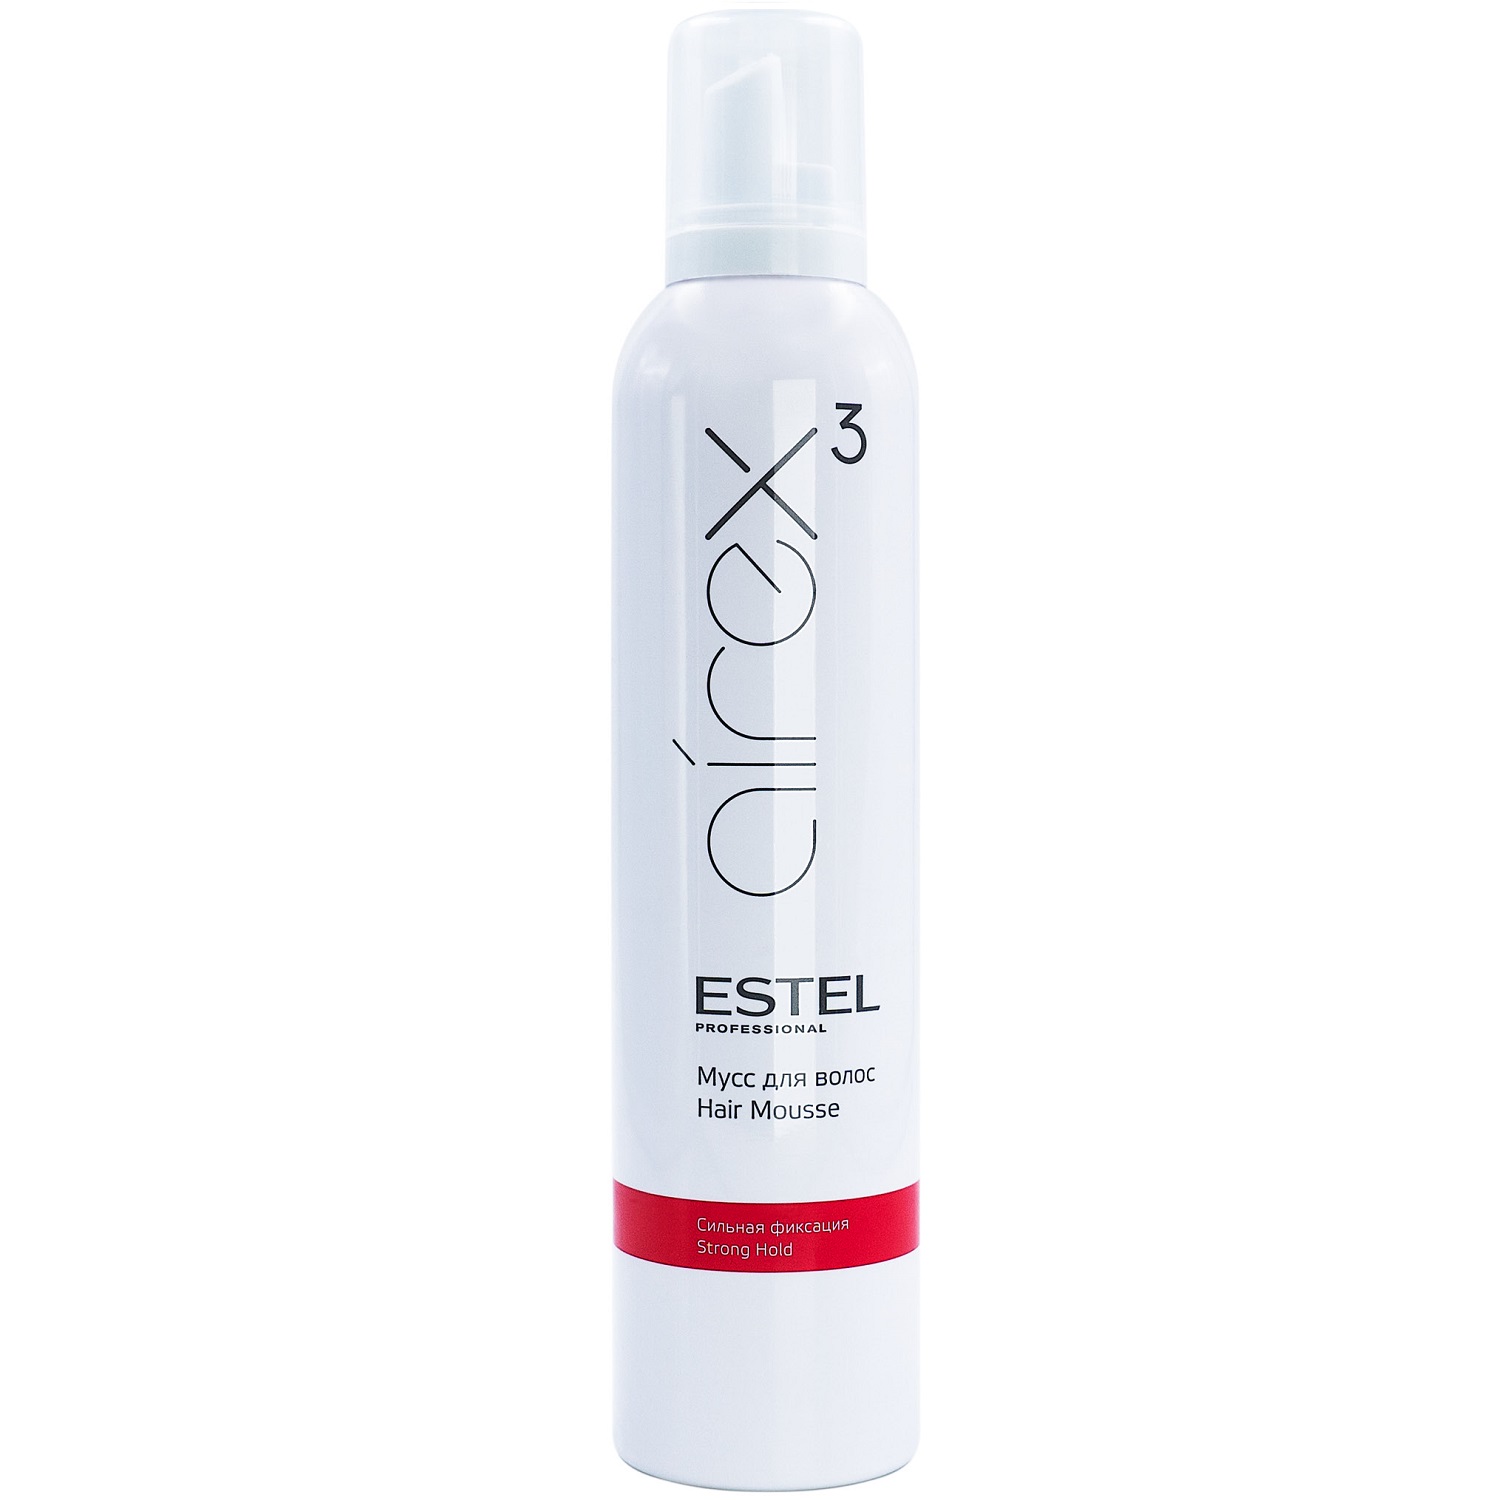 Estel Мусс для волос сильная фиксация, 300 мл (Estel, Airex) estel спрей airex push up для прикорневого объема волос сильная фиксация 100 мл